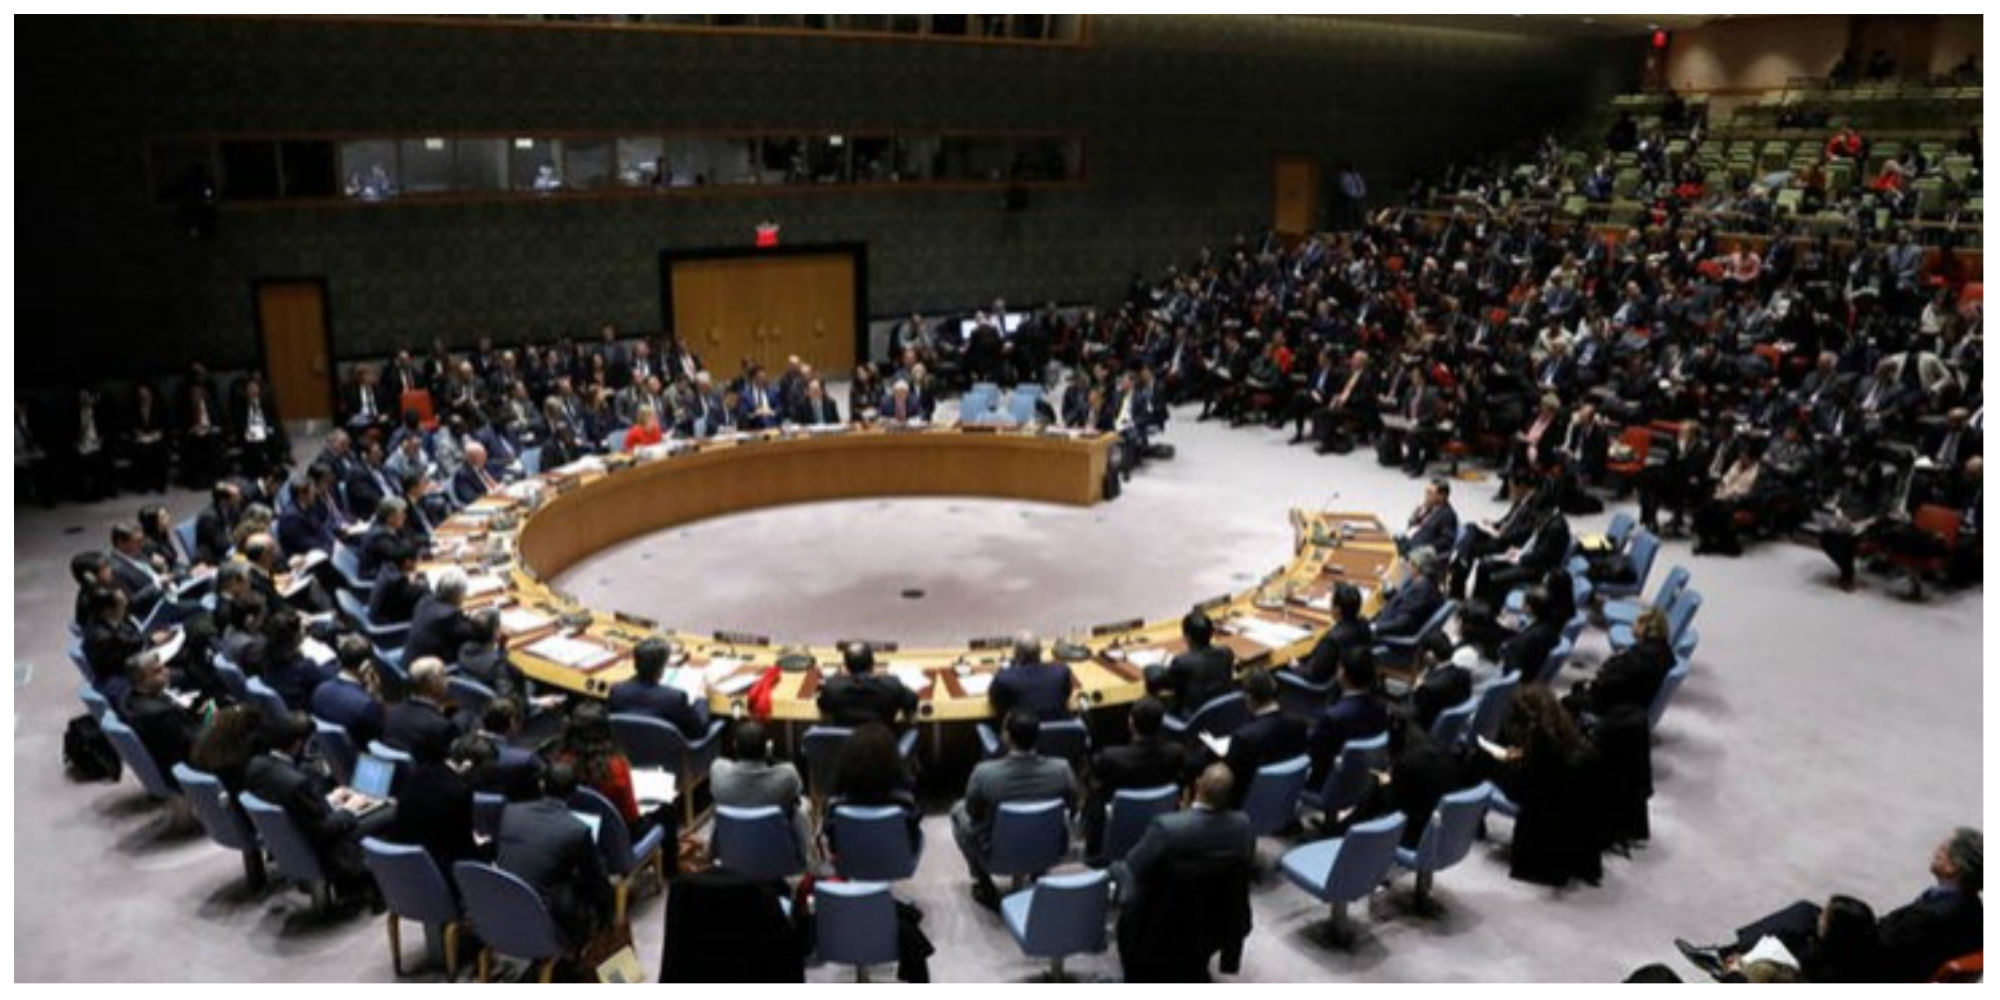 شورای امنیت با درخواست روسیه مخالفت کرد